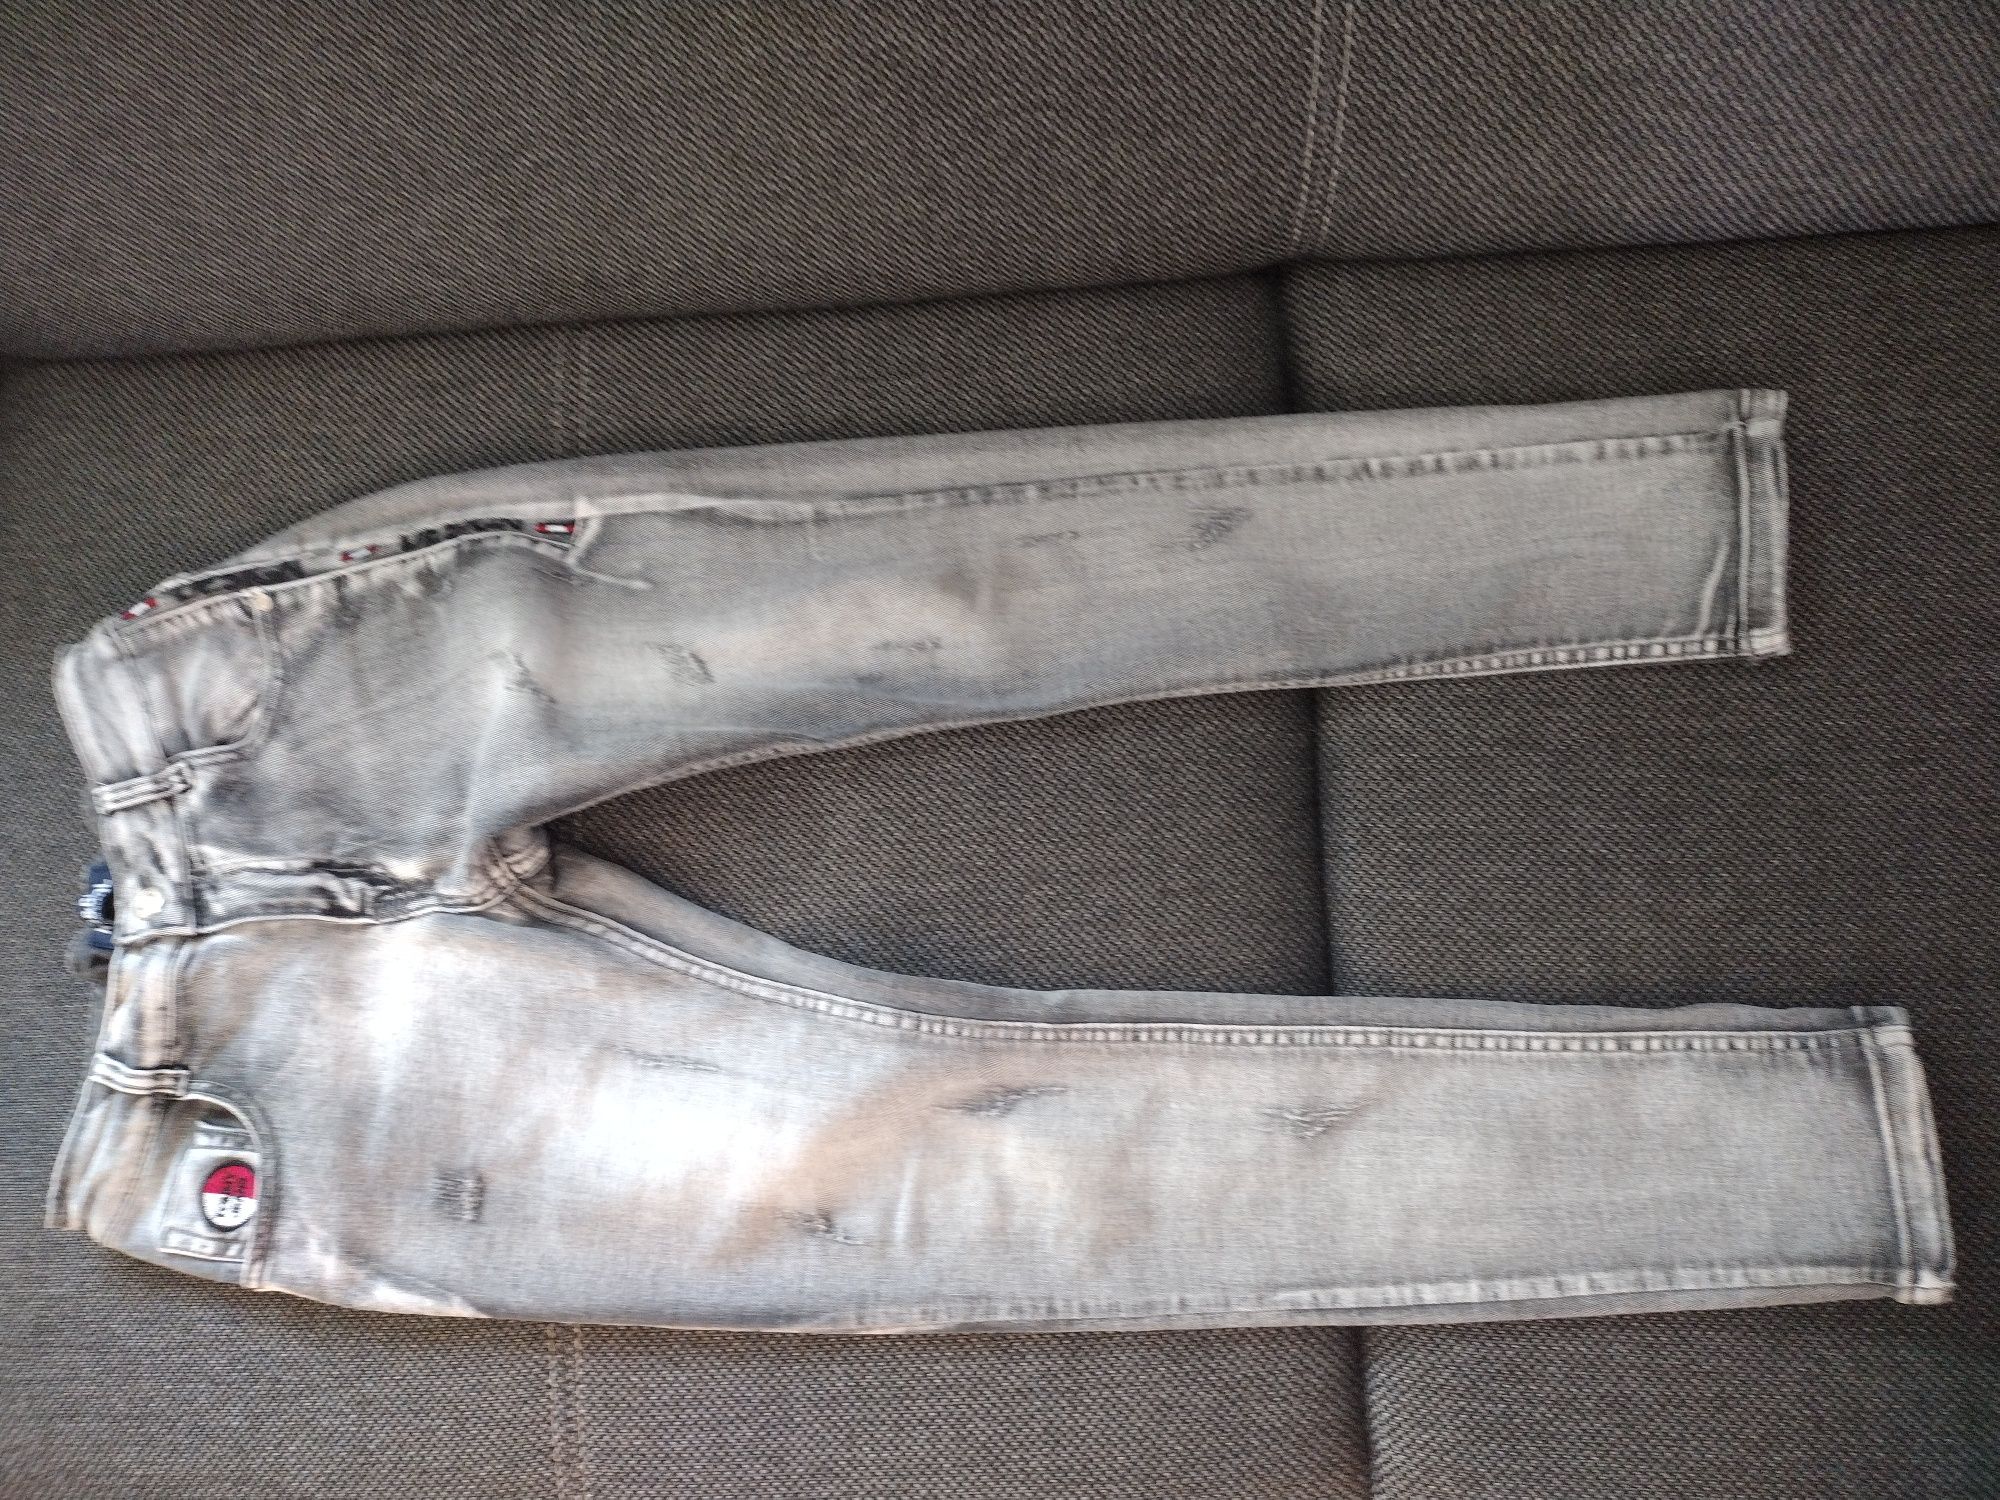 Spodnie jeansowe 158